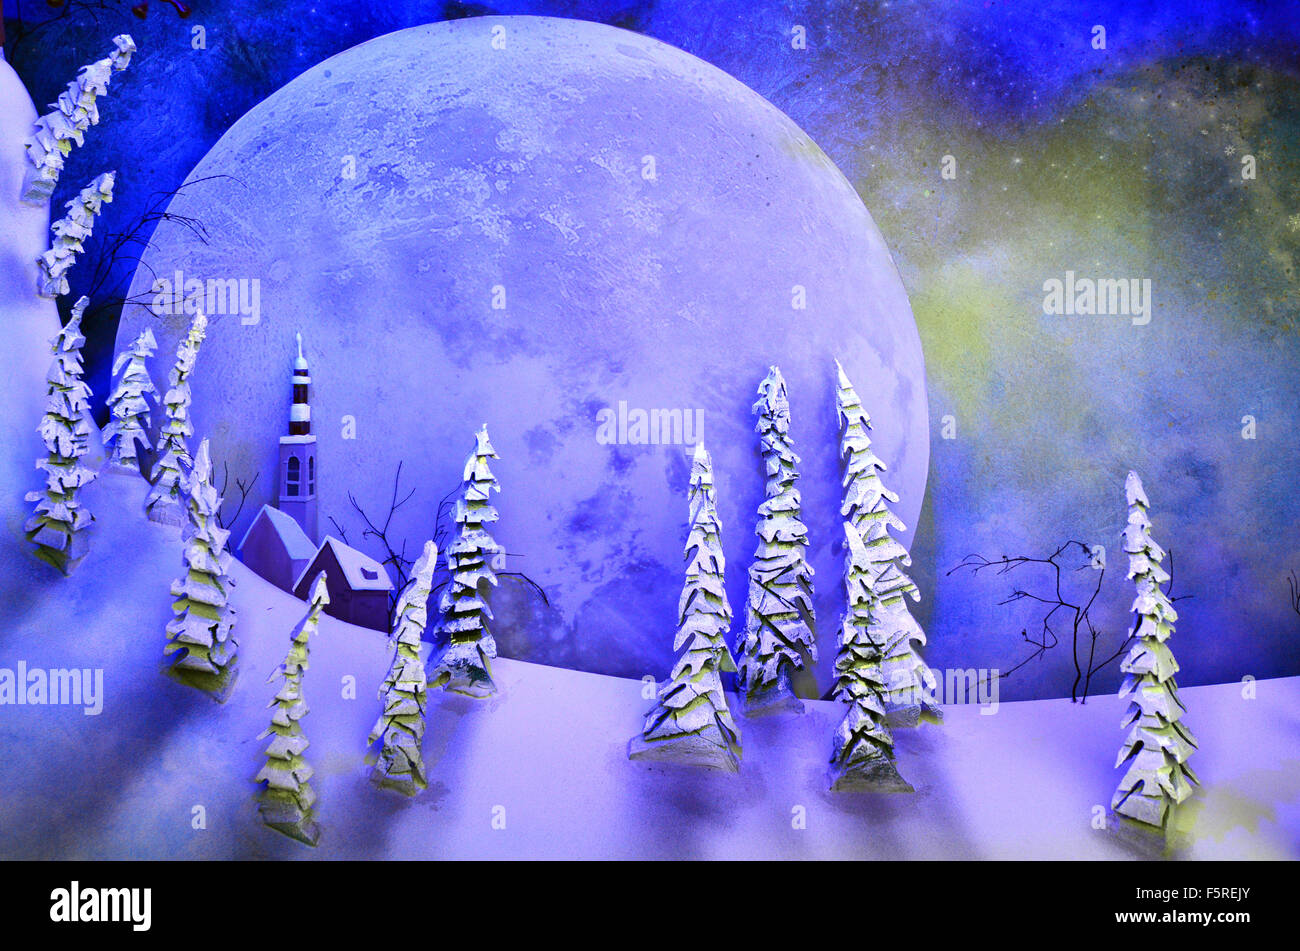 Sfondo Della Luna Piena Con Un Incremento Di Oltre Il Paesaggio Di Fantasia Di Neve E Alberi Da Bosco Di Notte Foto Stock Alamy